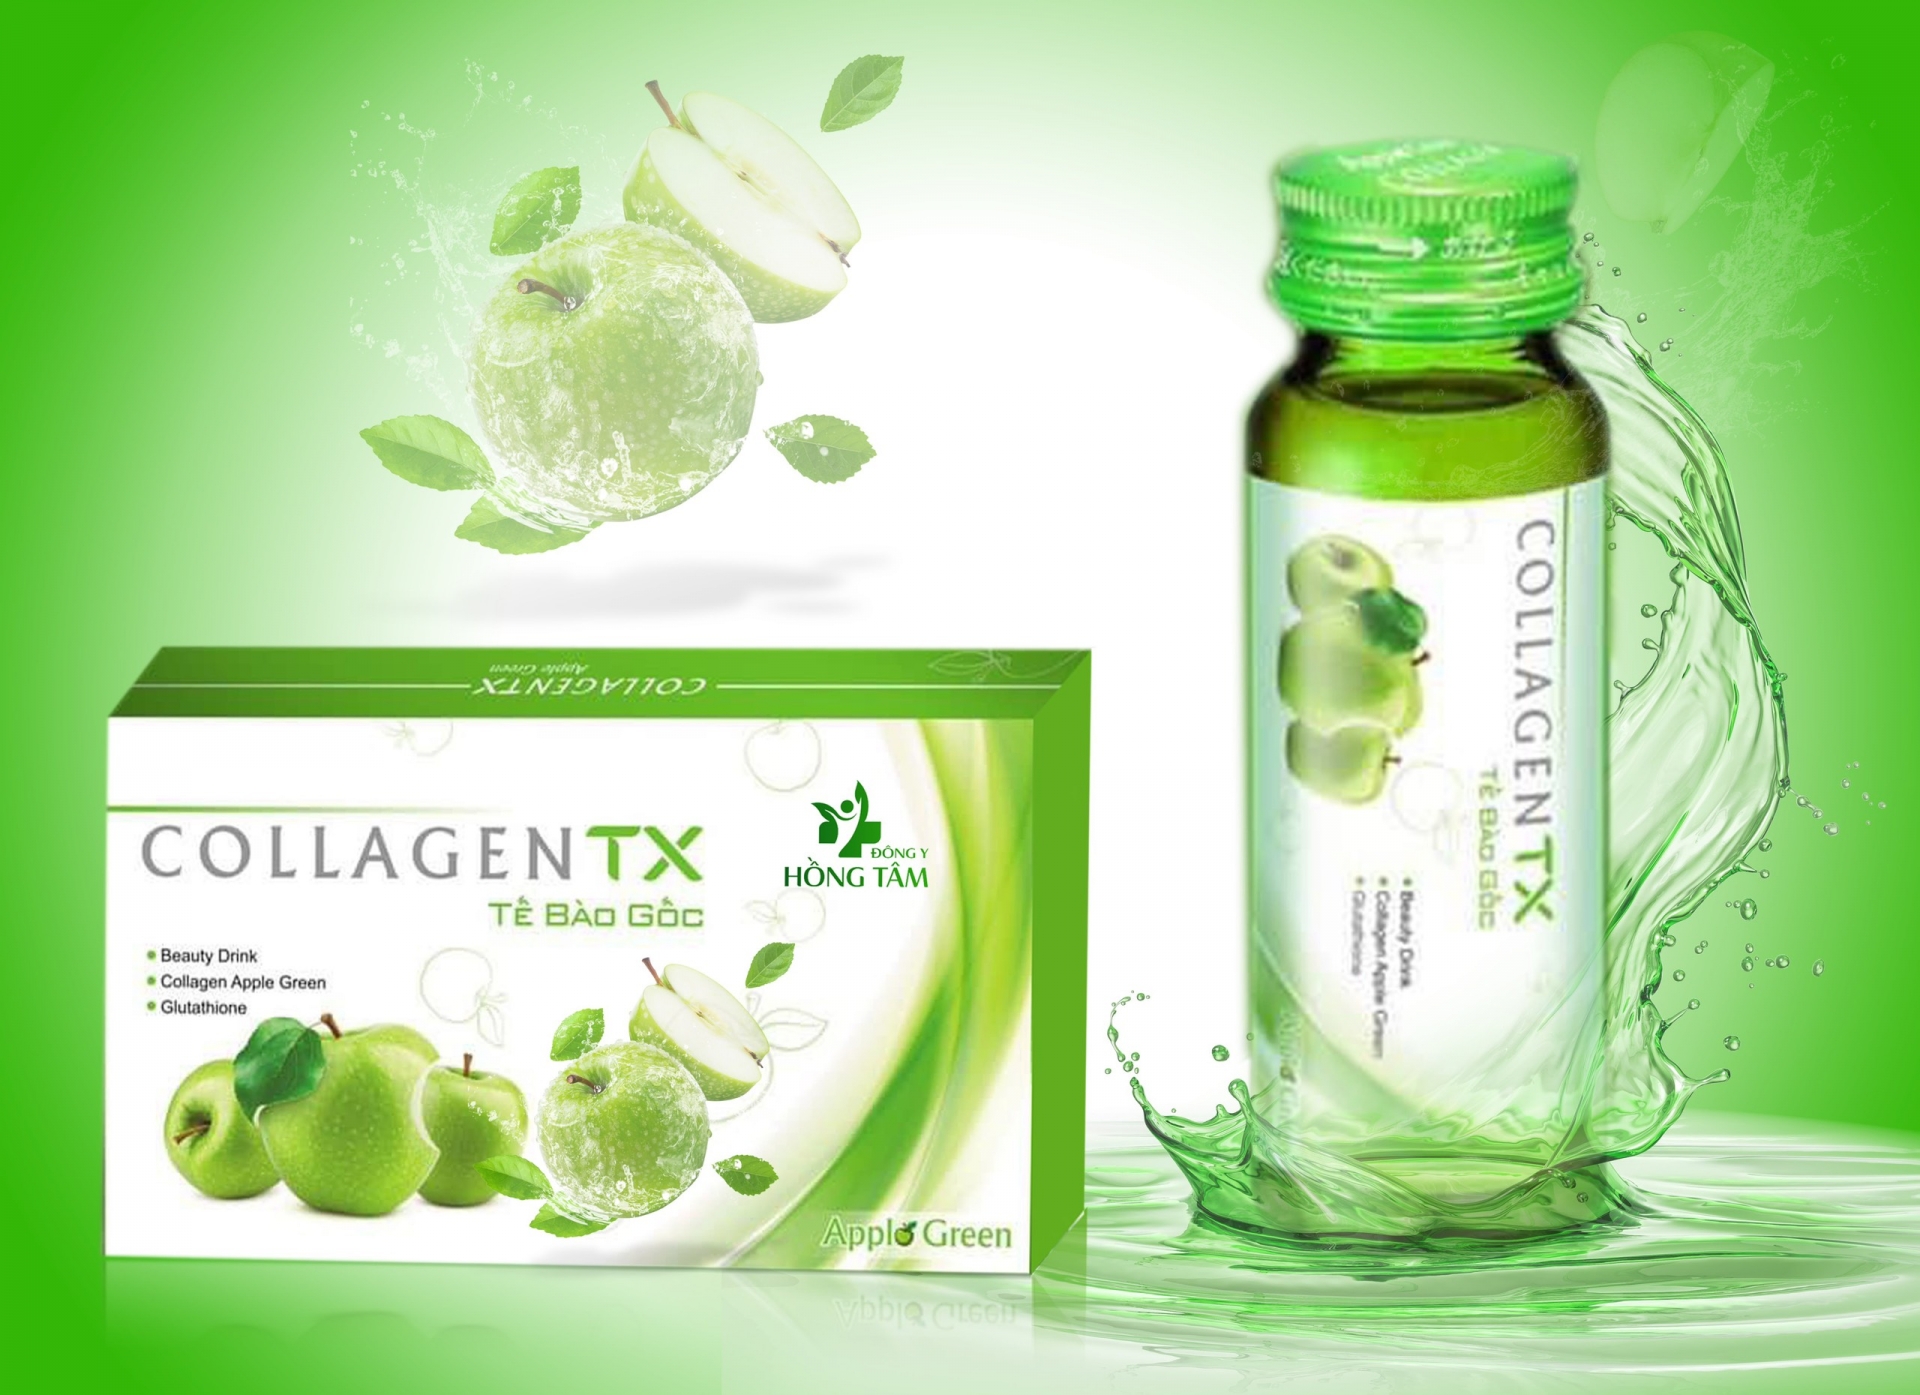 Với các nguyên liệu được nhập khẩu từ Nhật Bản, Công ty Hồng Tâm Pharmacy đã bào chế và phân phối sản phẩm Collagen TX tế bào gốc